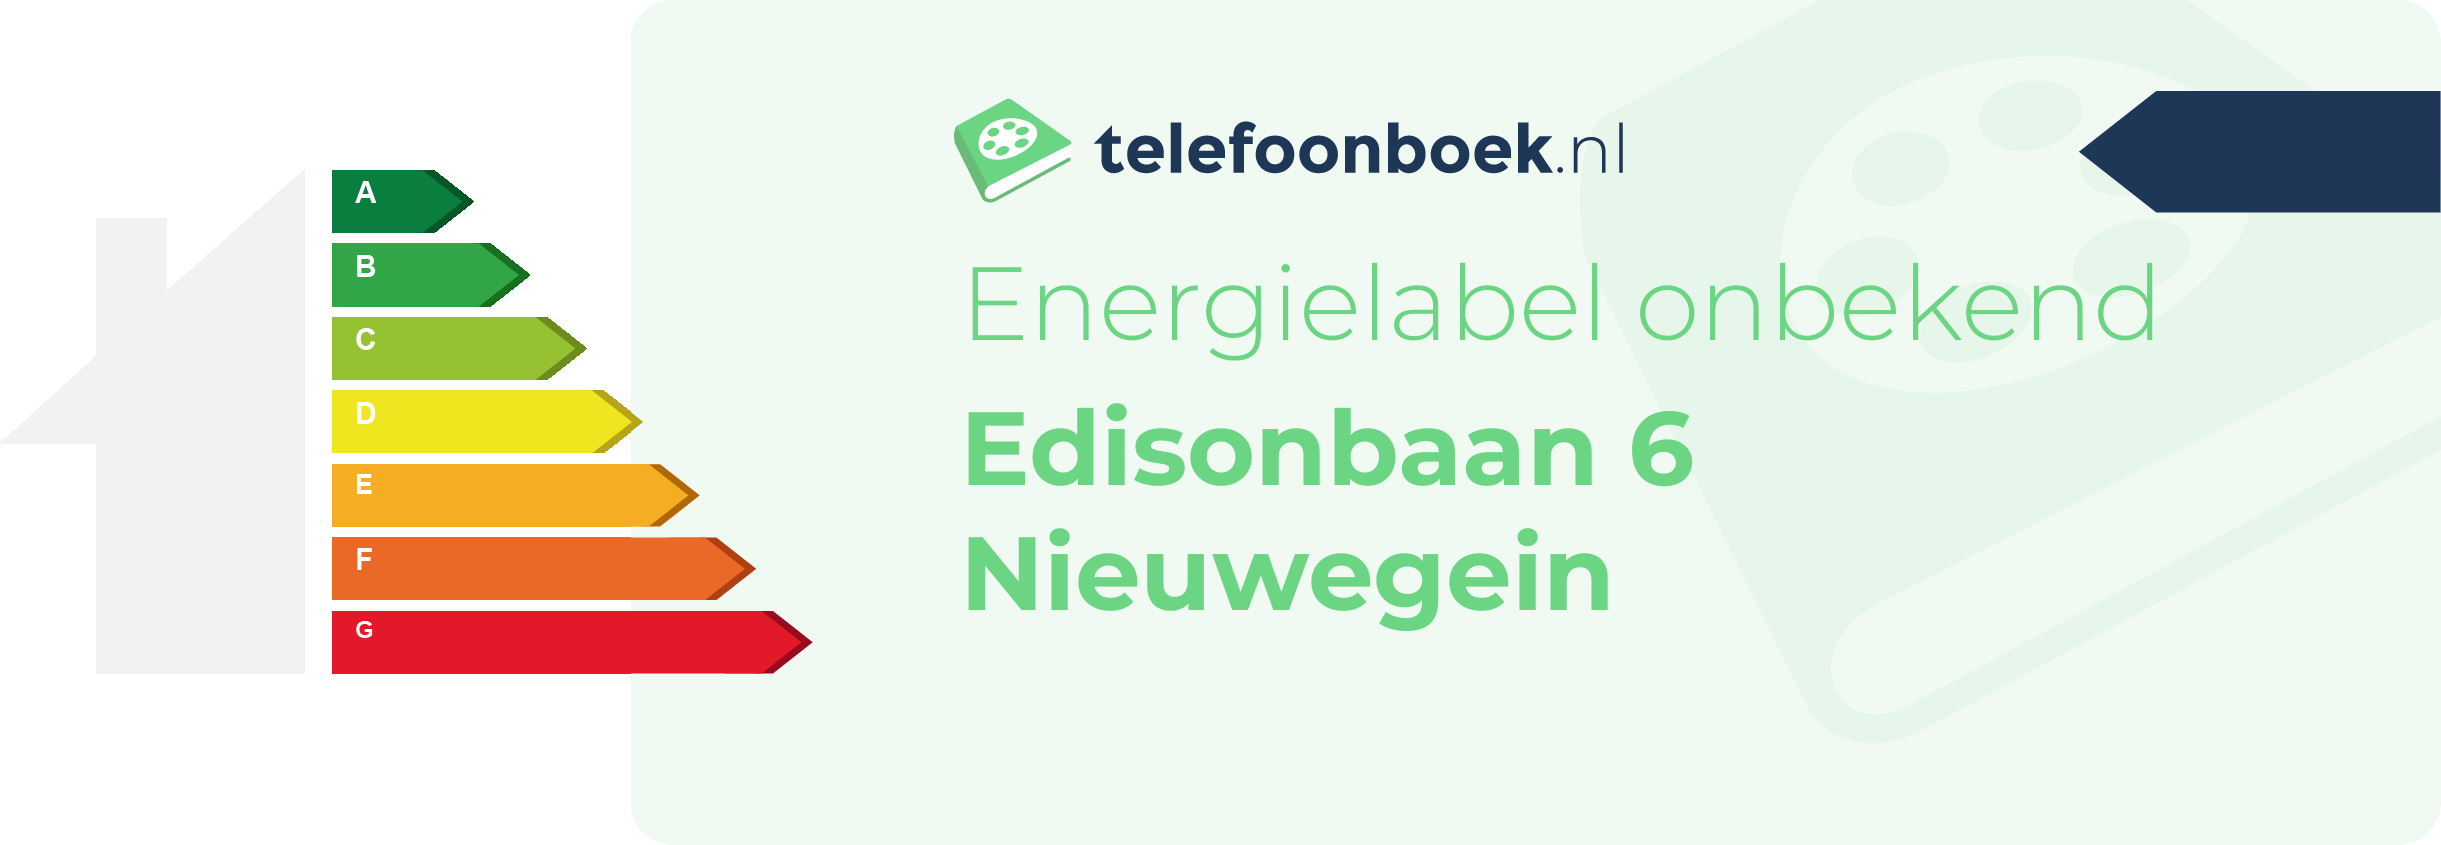 Energielabel Edisonbaan 6 Nieuwegein